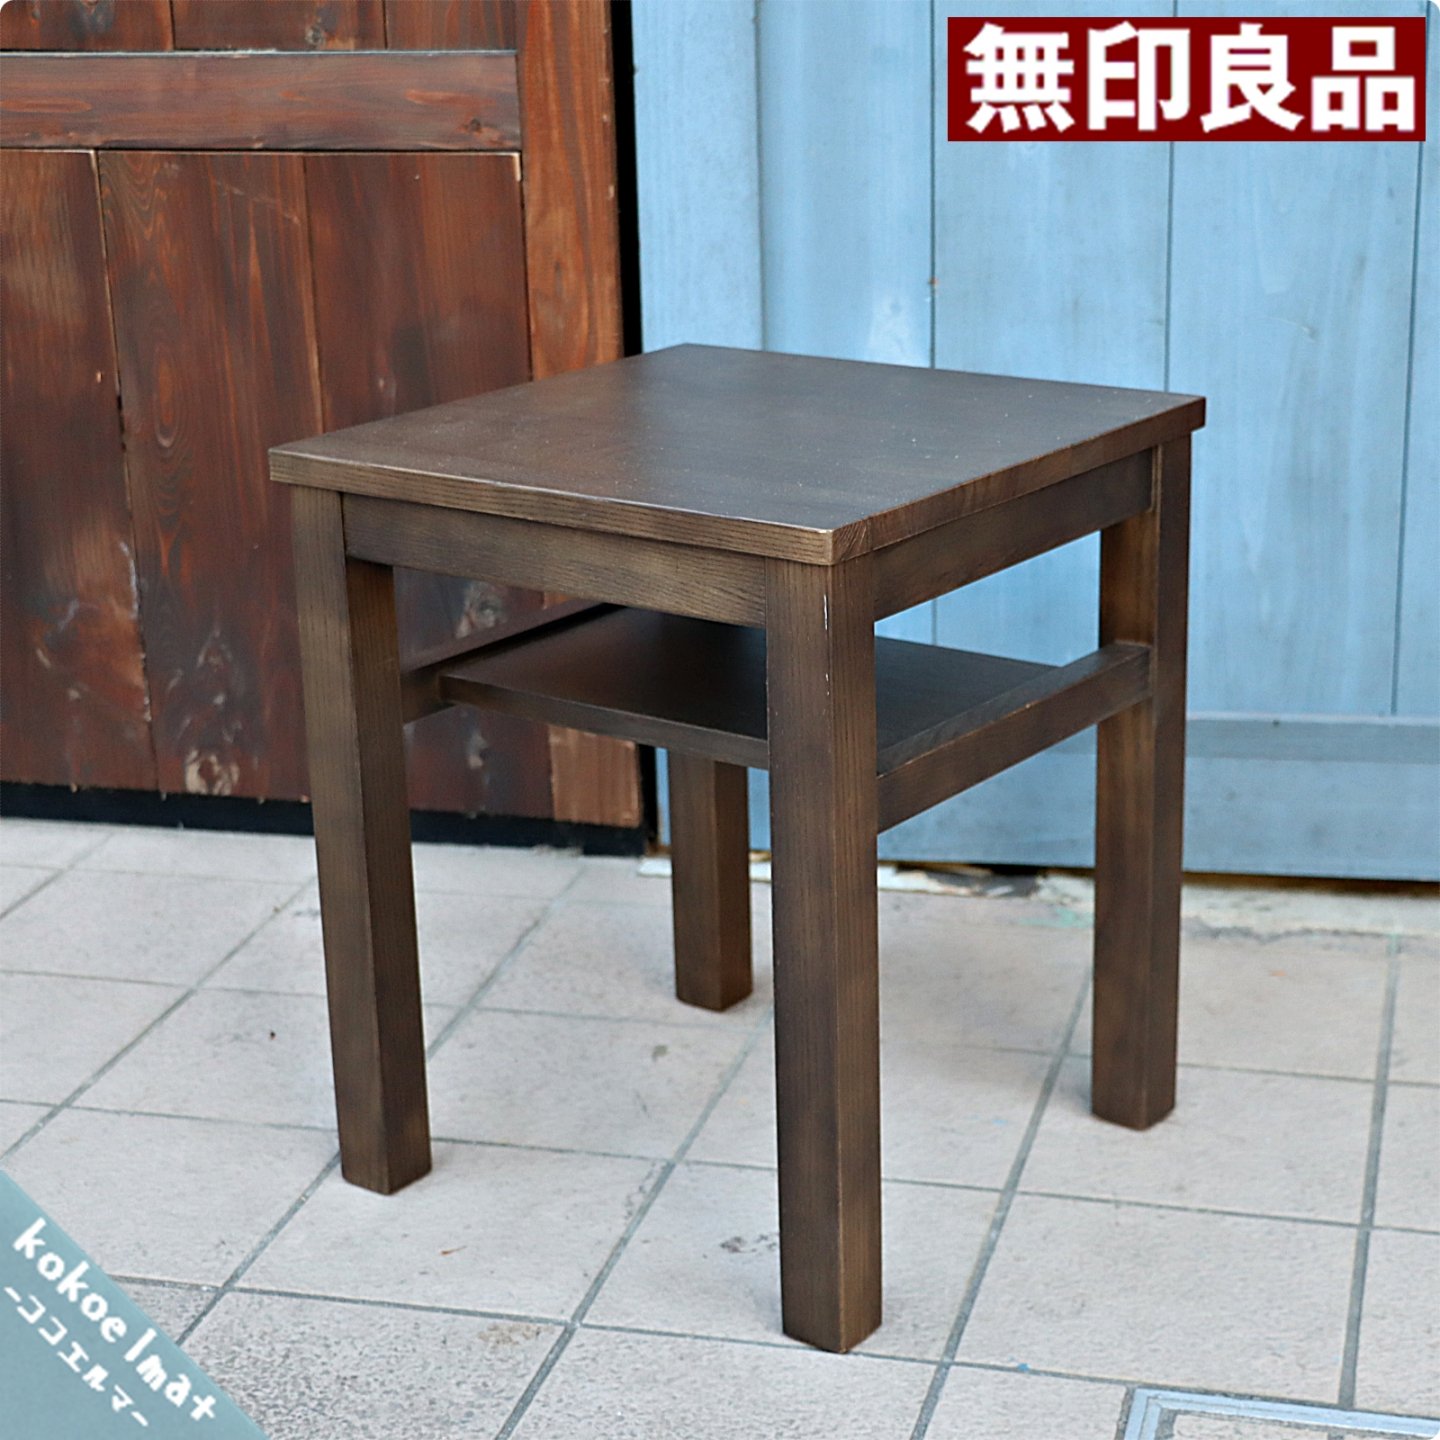 大勧め MUJI 無印良品 木製サイドテーブルベンチ オーク材 - サイドテーブル - hlt.no